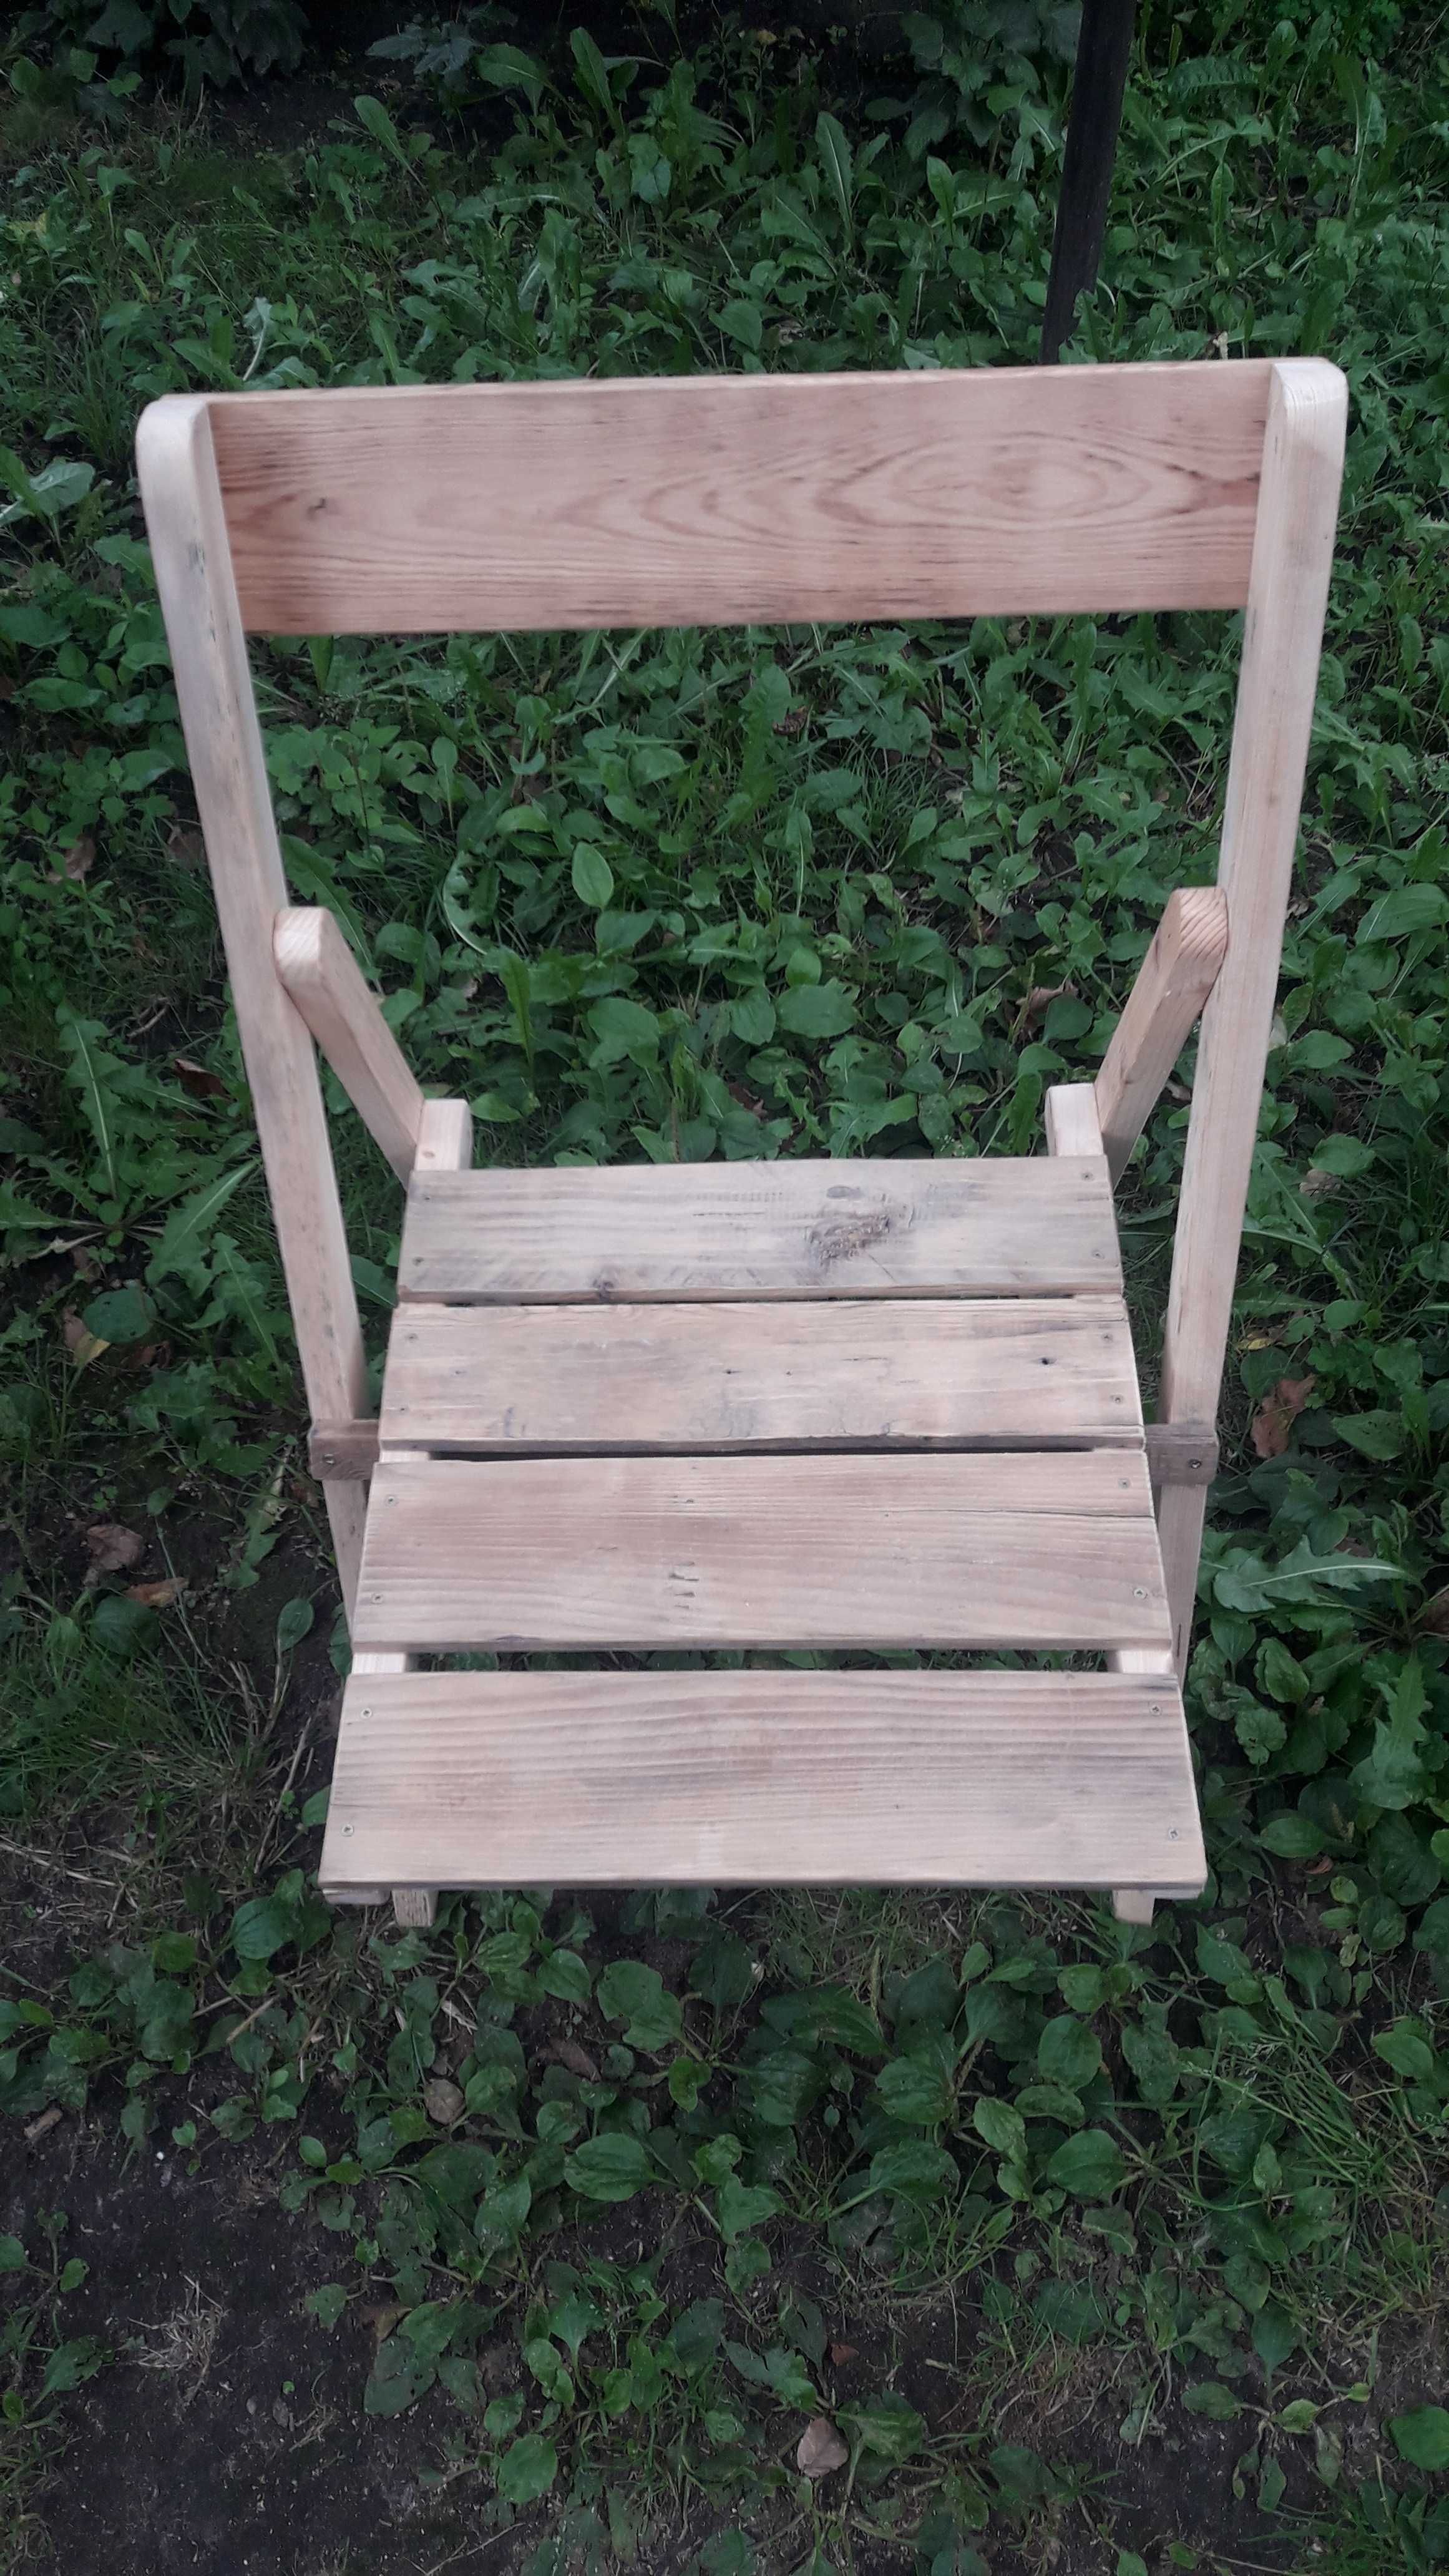 Складные стулья деревянные